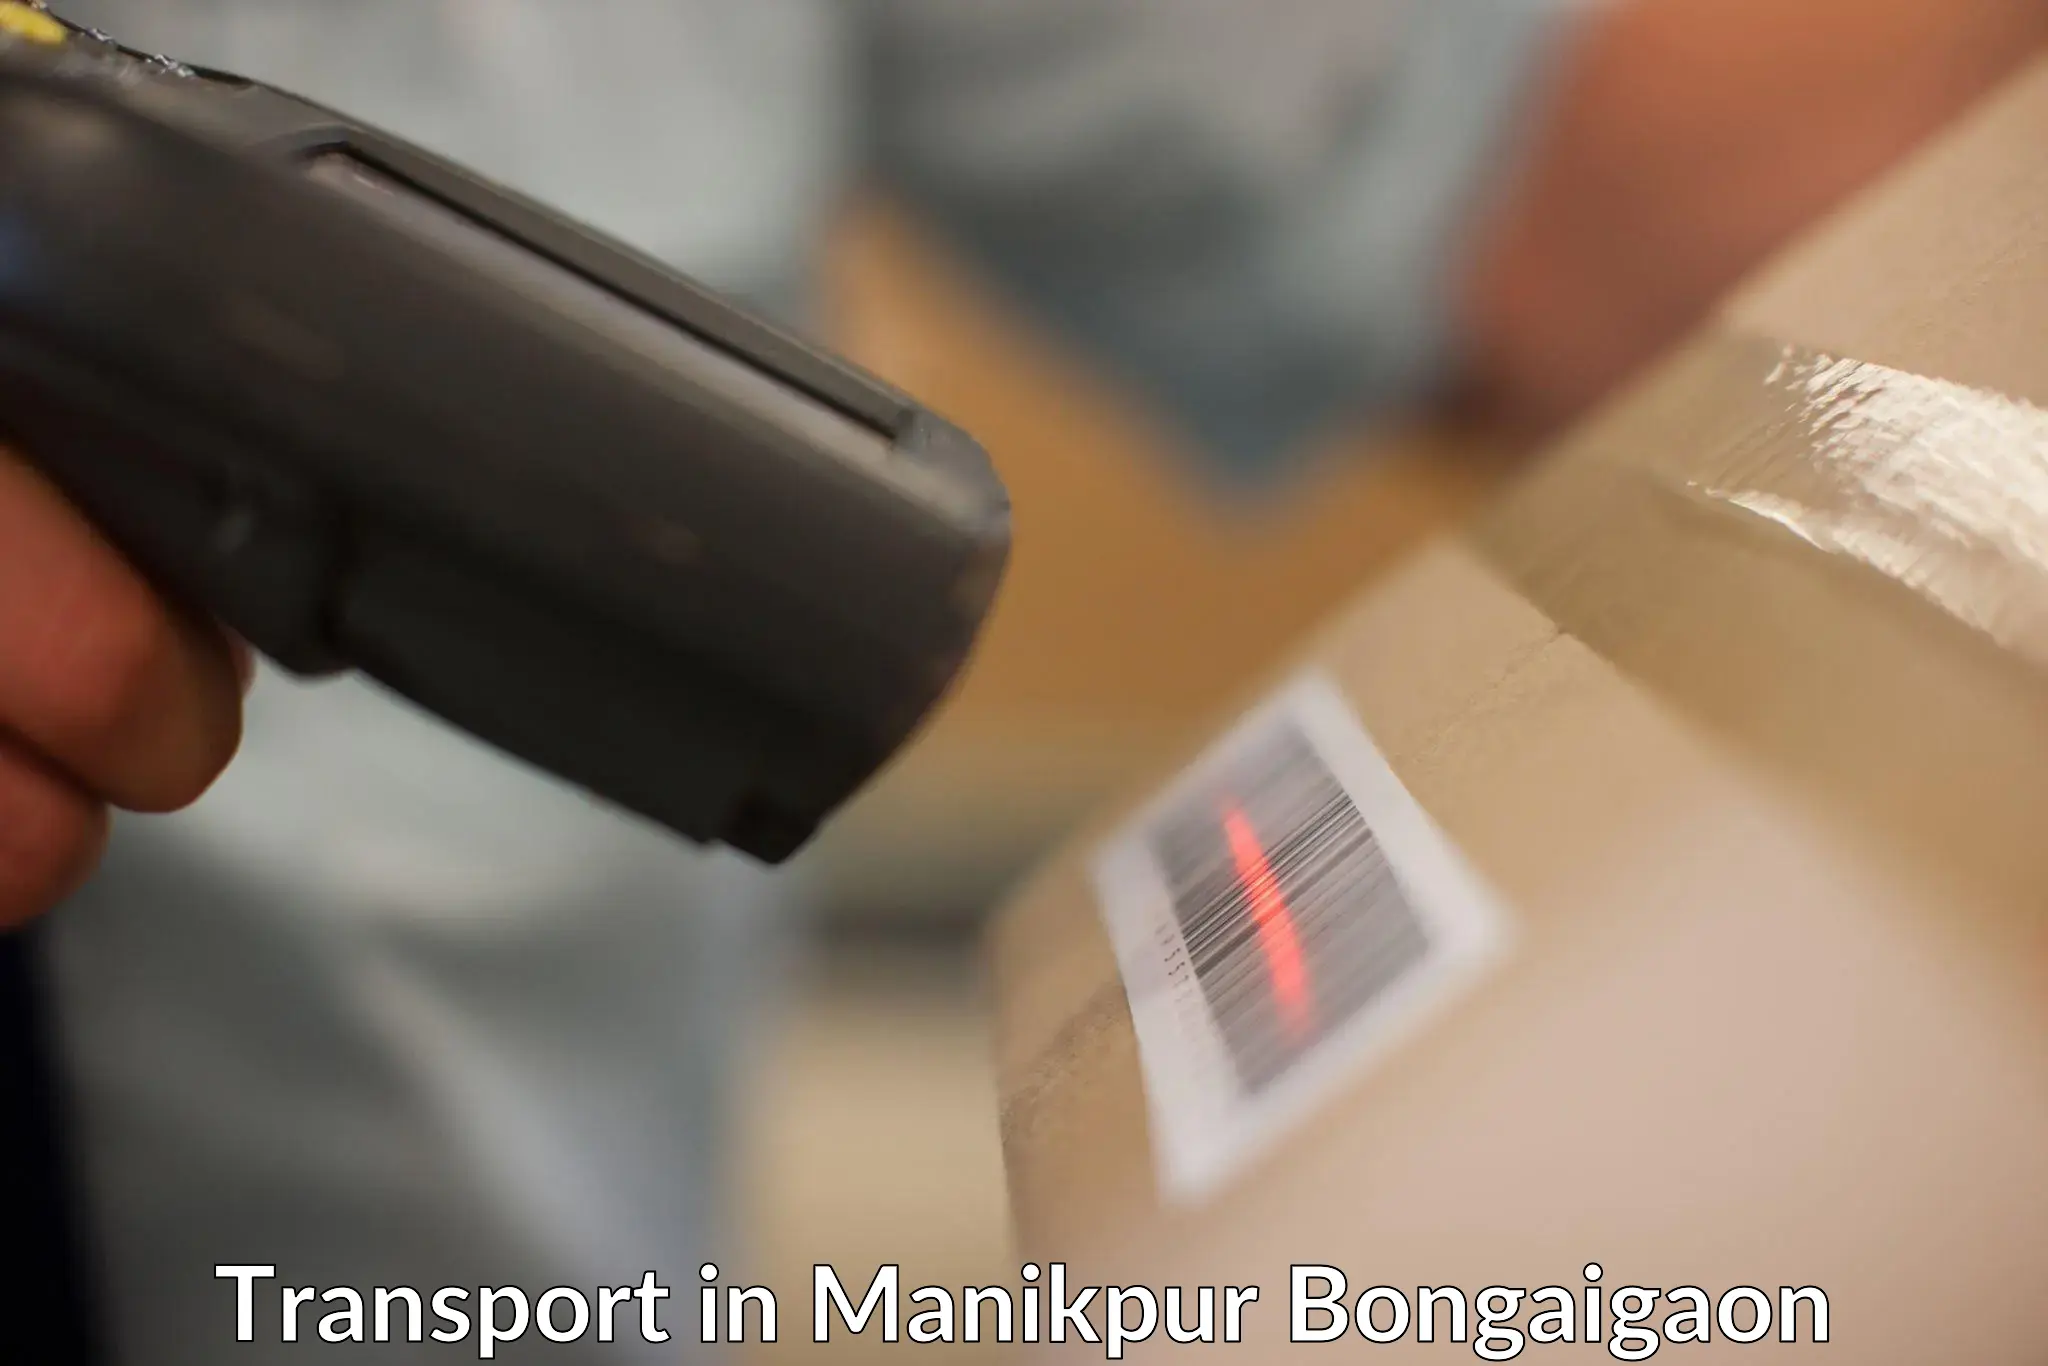 Interstate goods transport in Manikpur Bongaigaon